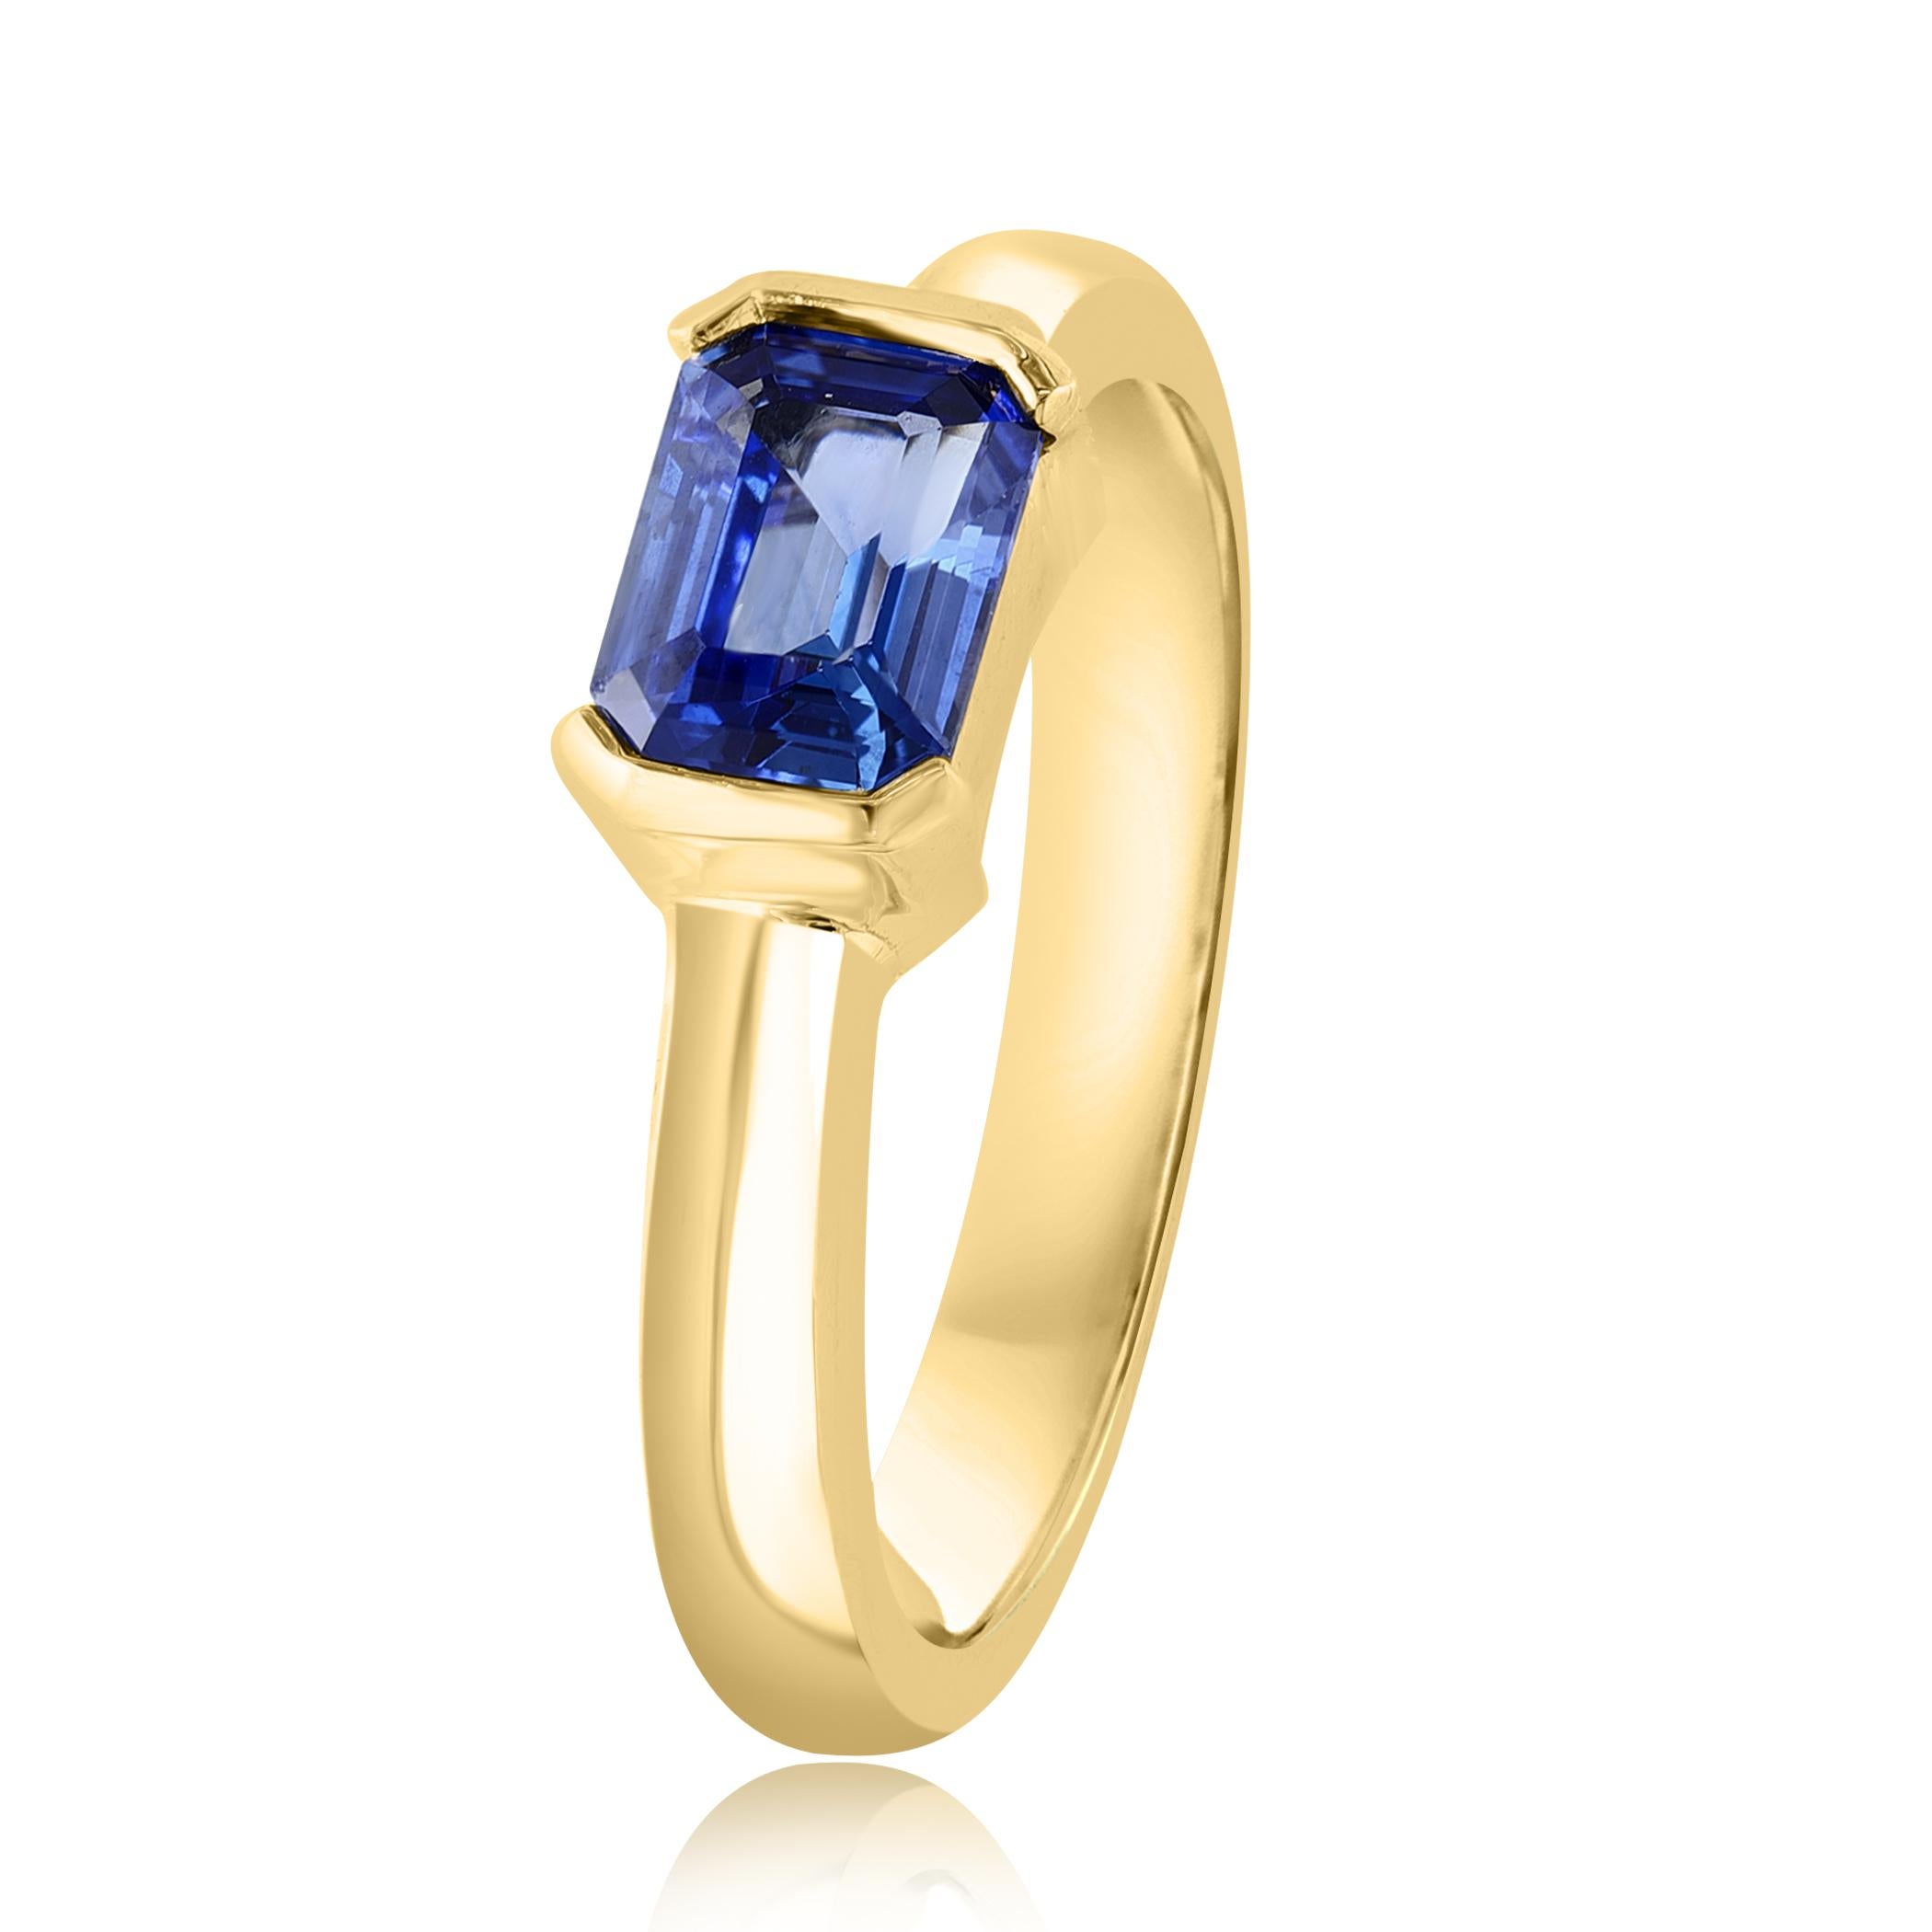 Une bague de mariage élégante présentant un étonnant saphir bleu de 1,06 carat de taille émeraude, serti dans un magnifique anneau large en or jaune 14K. 

Le style est disponible dans différentes gammes de prix. Les prix sont fonction de votre